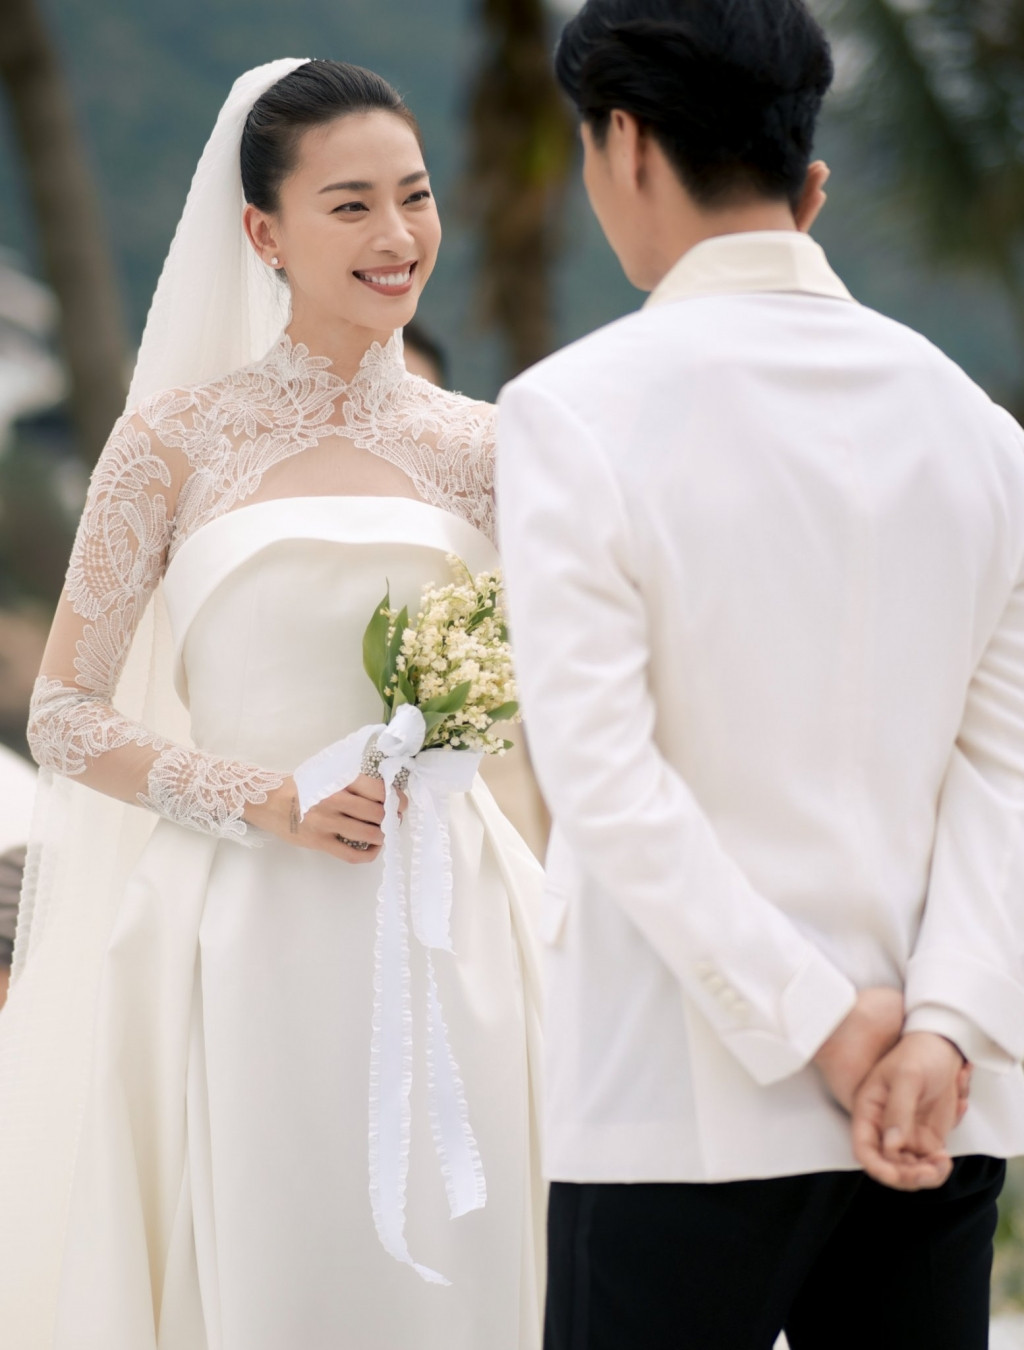 Tung ảnh cưới đẹp như mơ, Ngô Thanh Vân nhắn gửi ông xã: Sẵn sàng làm vợ, làm mẹ